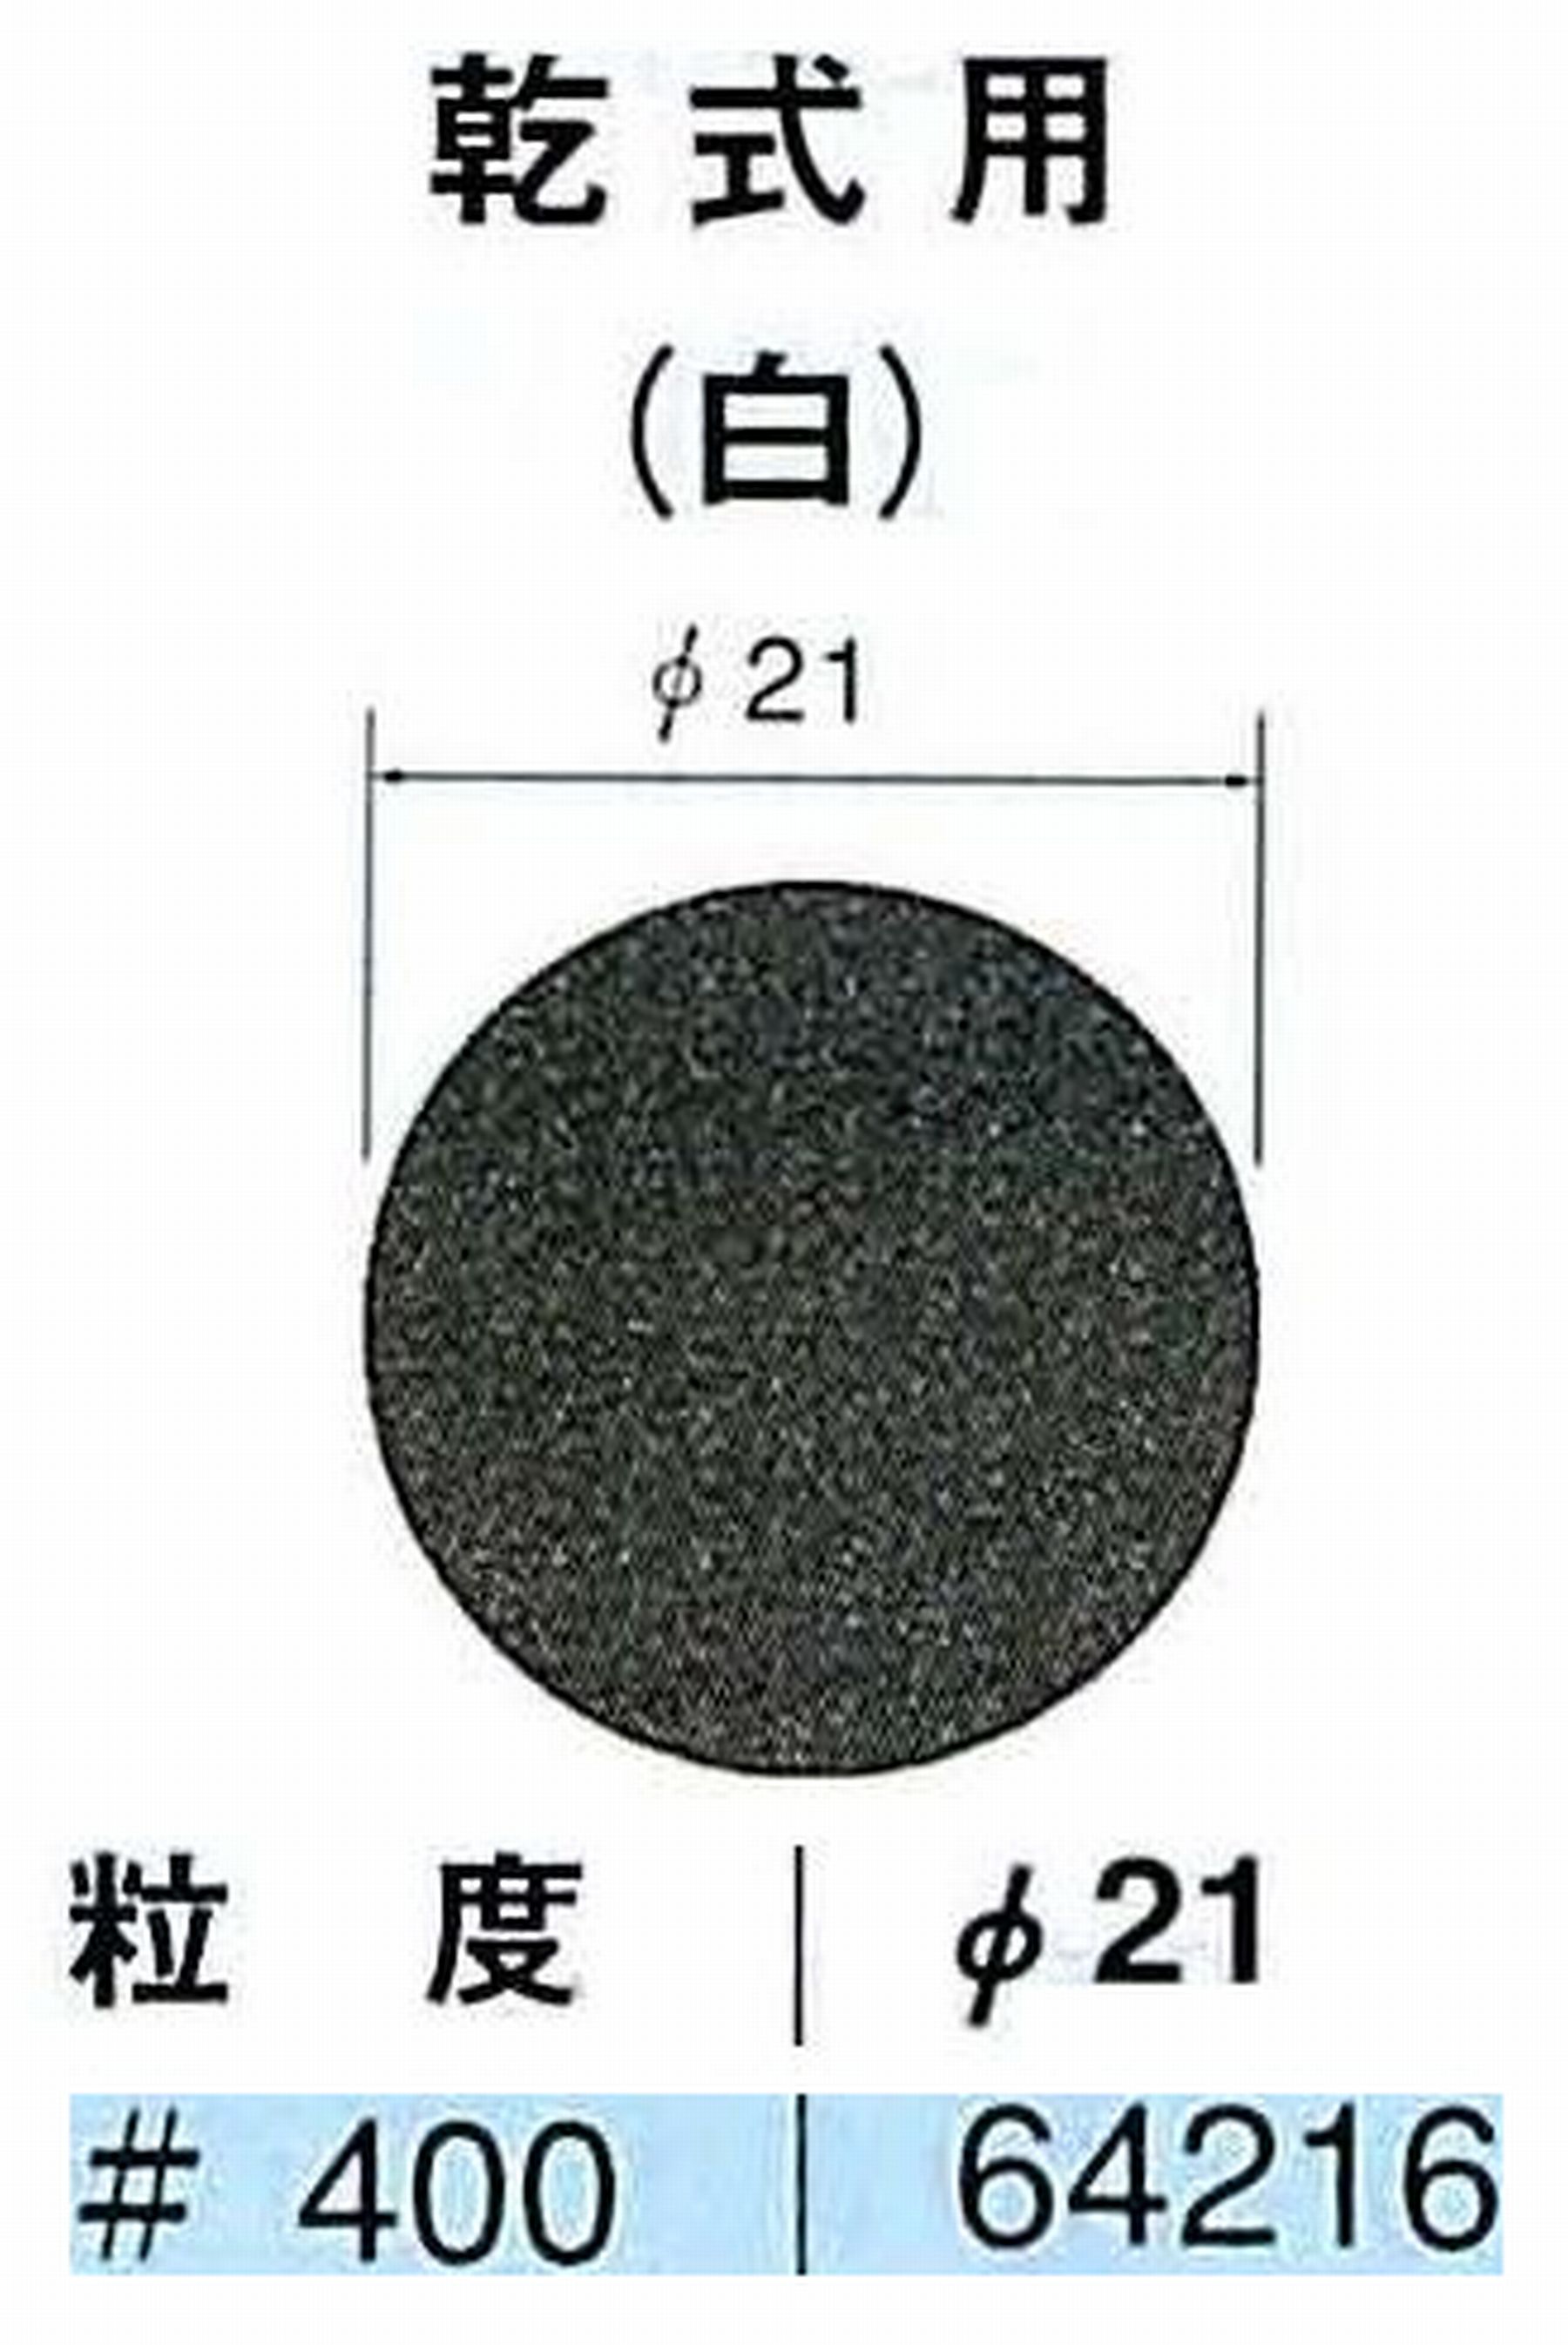 ナカニシ/NAKANISHI アングルグラインダ(電動・エアー) アングルアタッチメント専用工具 サンドペーパーディスク(紙基材タイプ)裏面のり処理 64216